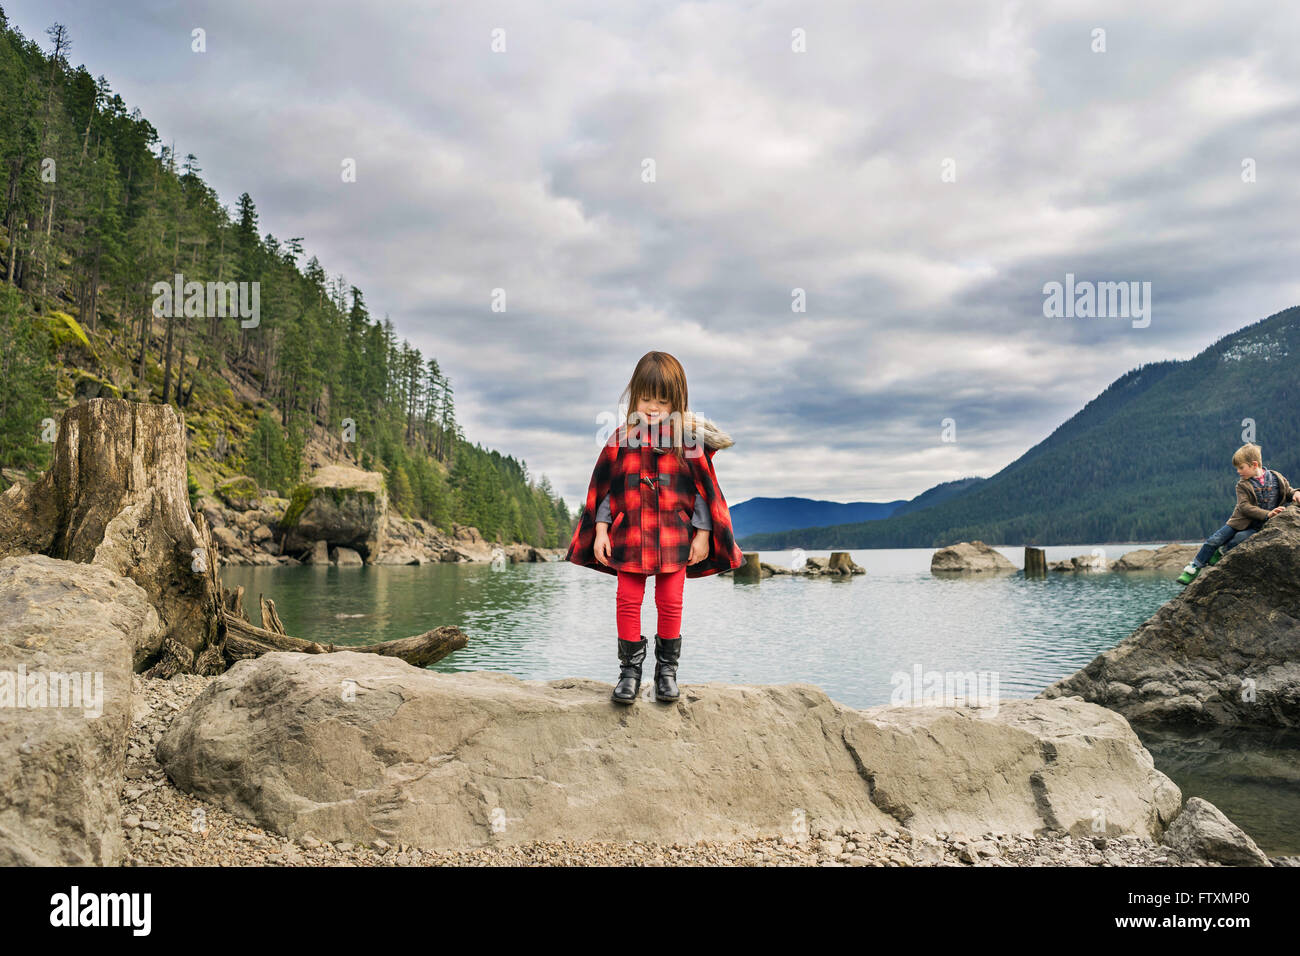 Jeune fille debout sur rock en river valley Banque D'Images